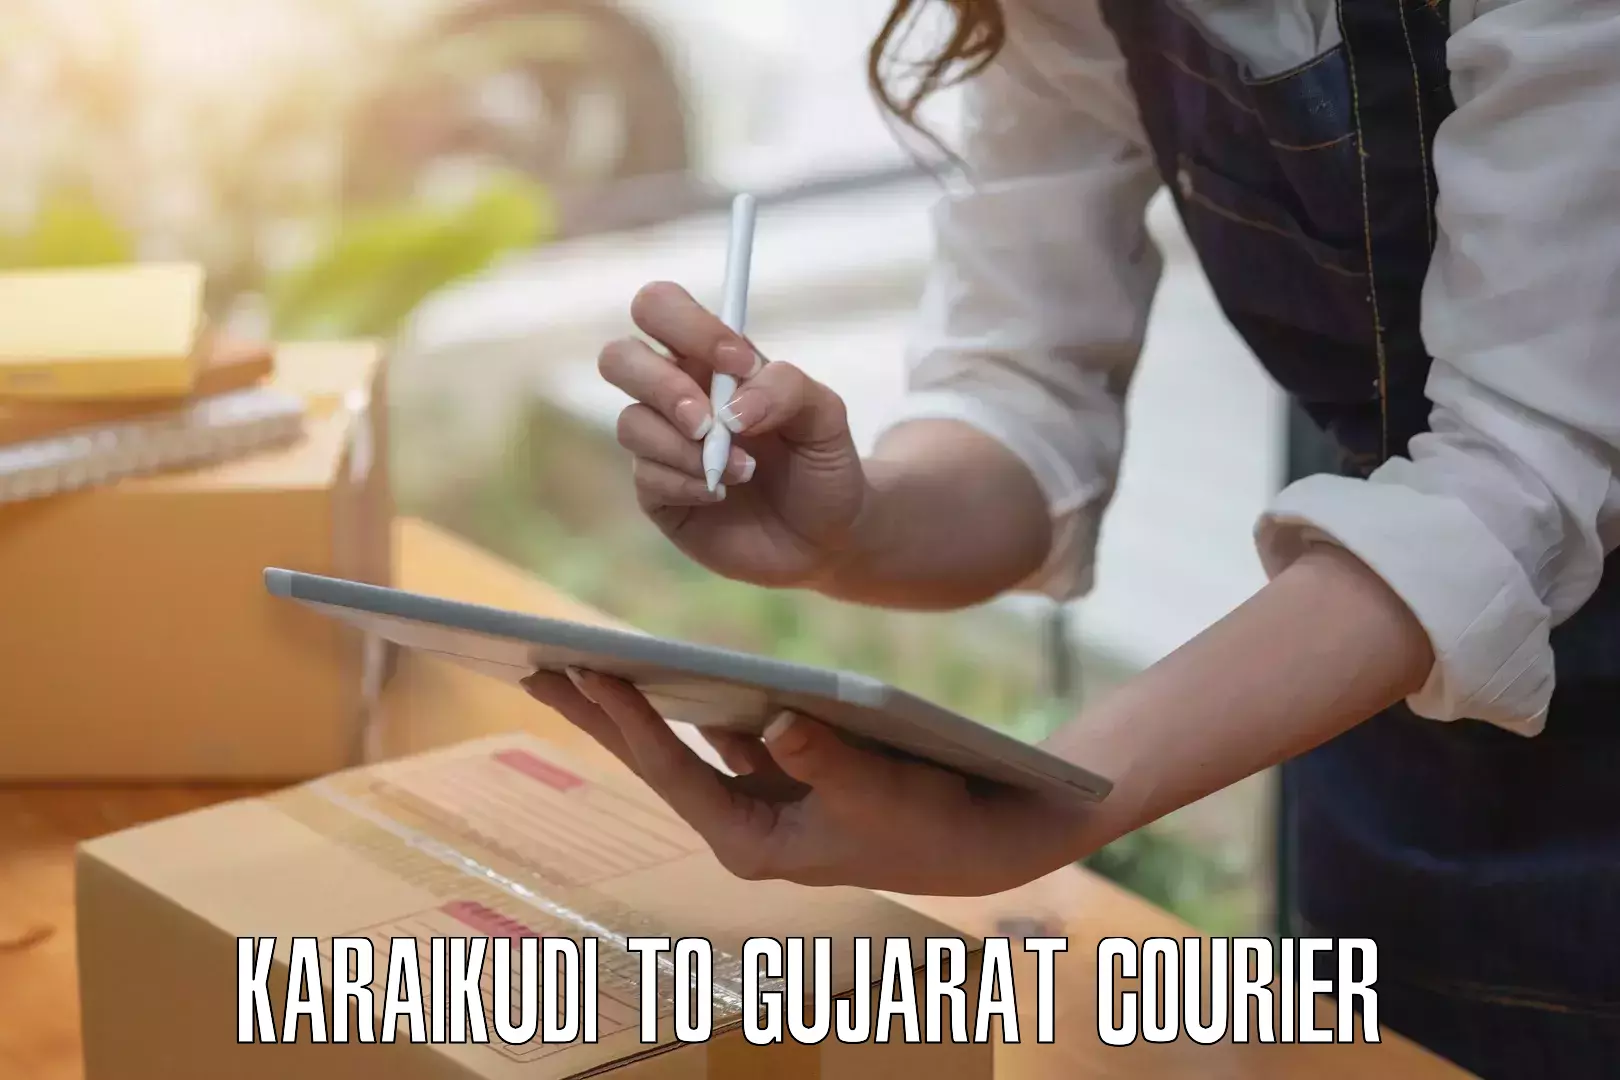 Baggage courier service Karaikudi to Gujarat